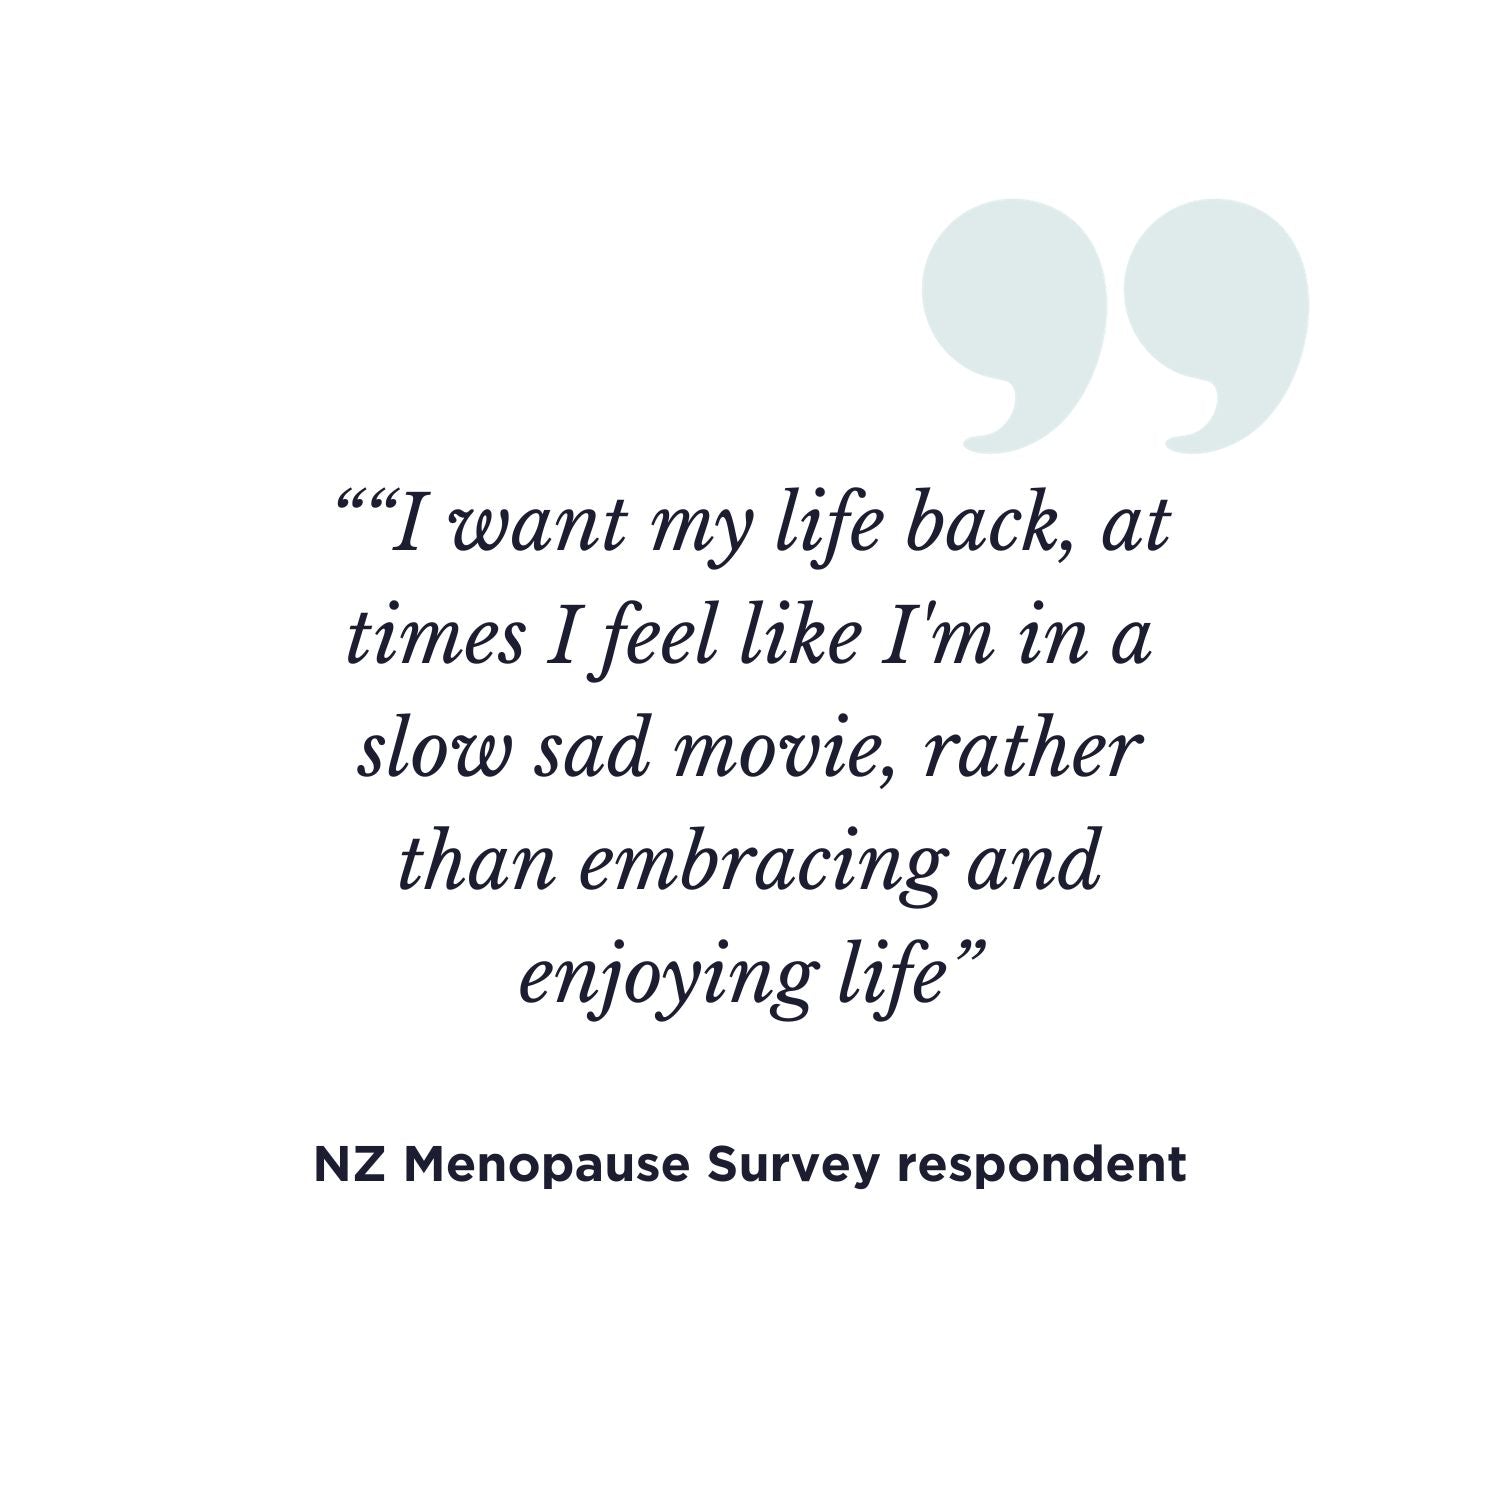 NZ Menodoctor Menopause survey statement